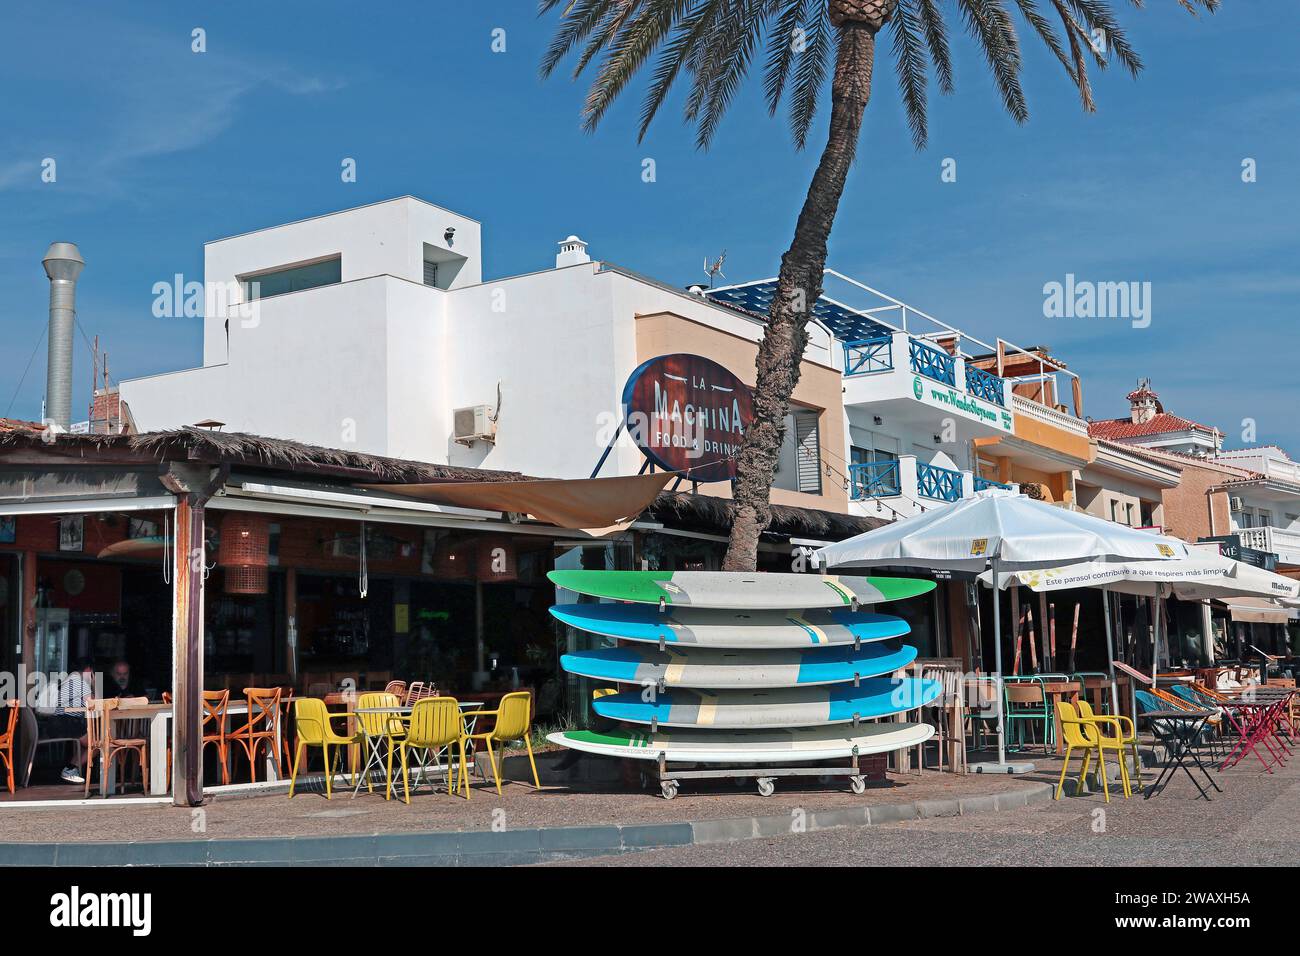 La Machina chiringuito, petit restaurant et bar en bord de mer, promenade en bord de mer, village de pêcheurs Pedregalejo, Malaga, Costa del sol, Andalousie, Espagne Banque D'Images